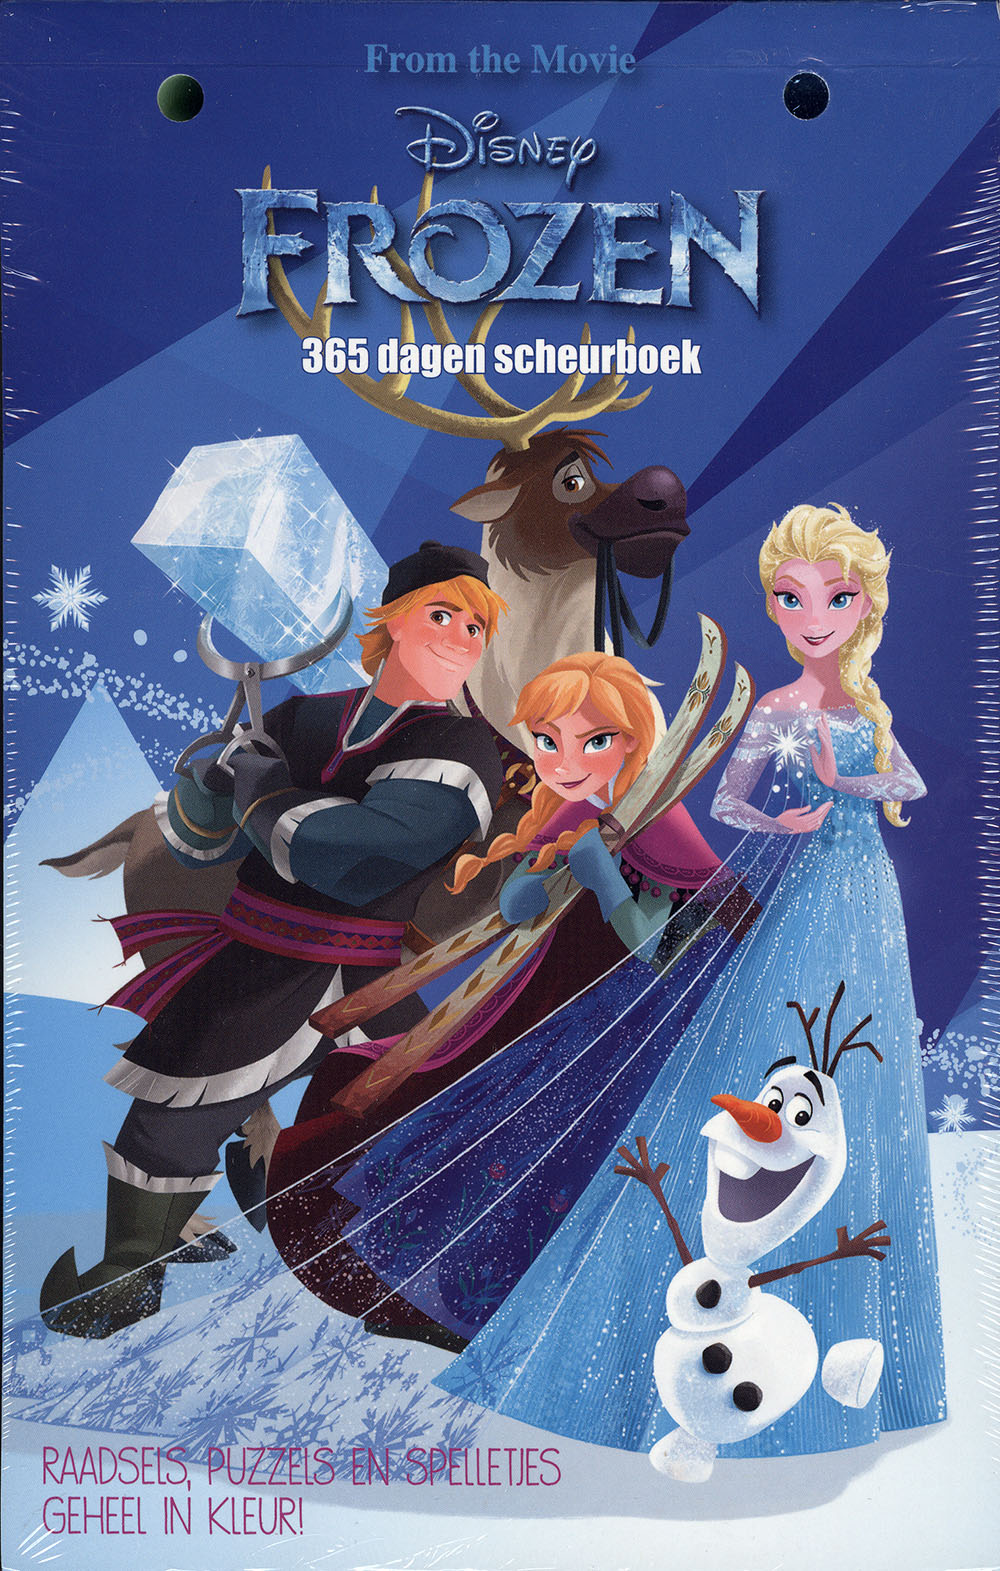 Disney 365 dagen scheurboek - StripboekenHandel.nl